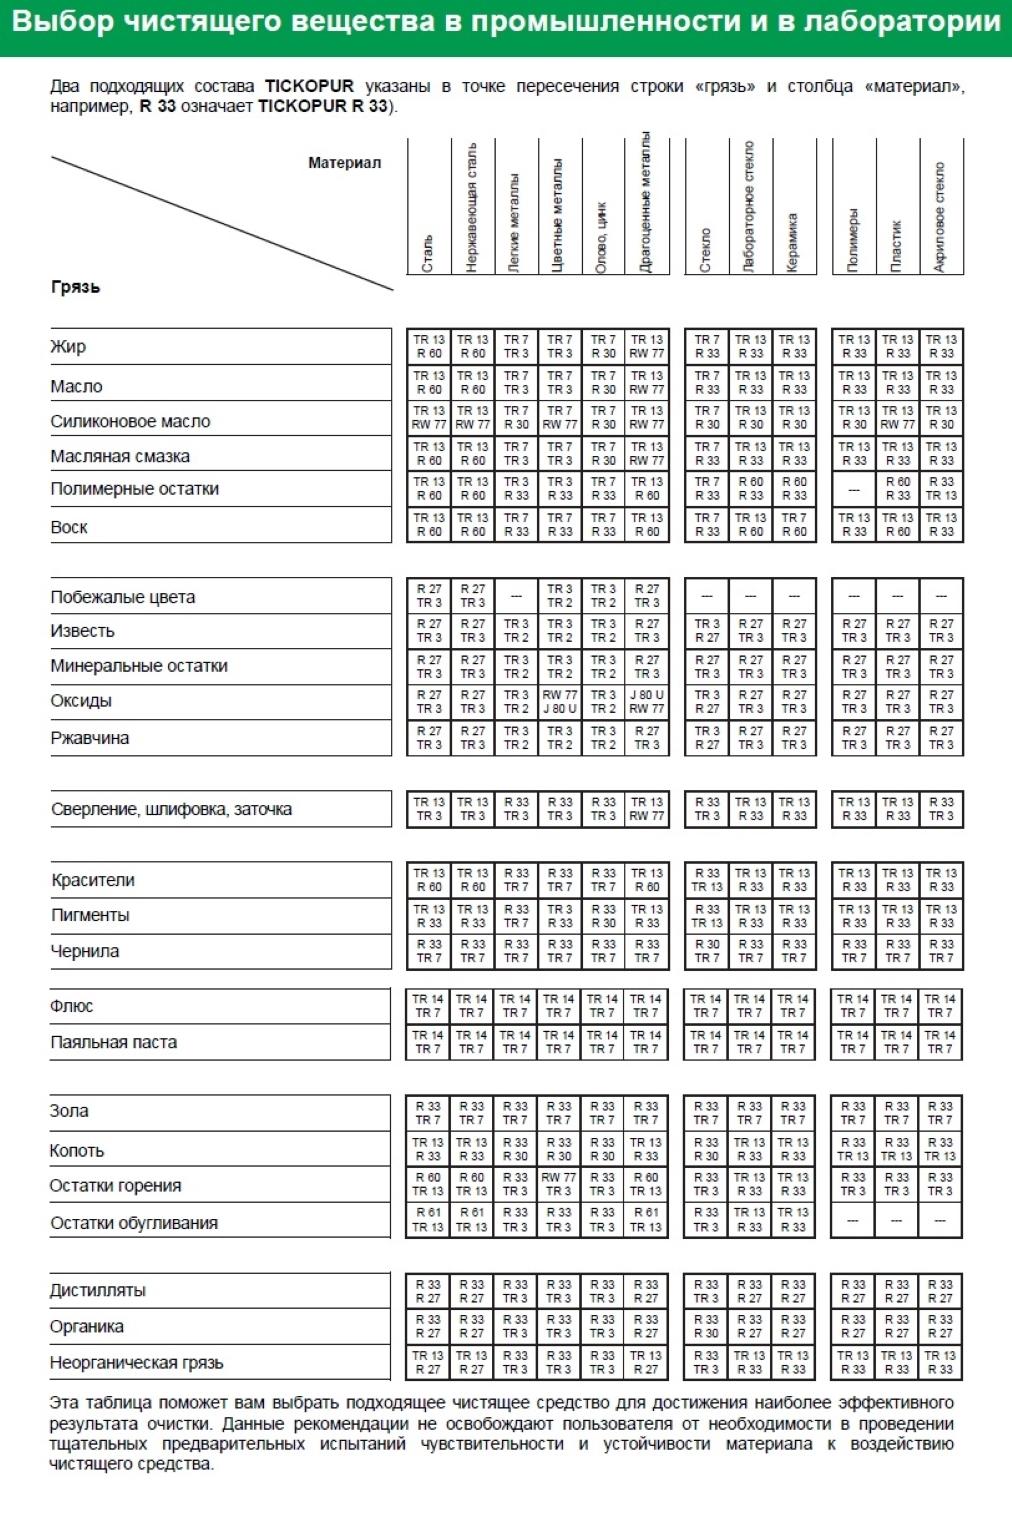 Таблица выбора чистящего вещества R 32 TICKOPUR